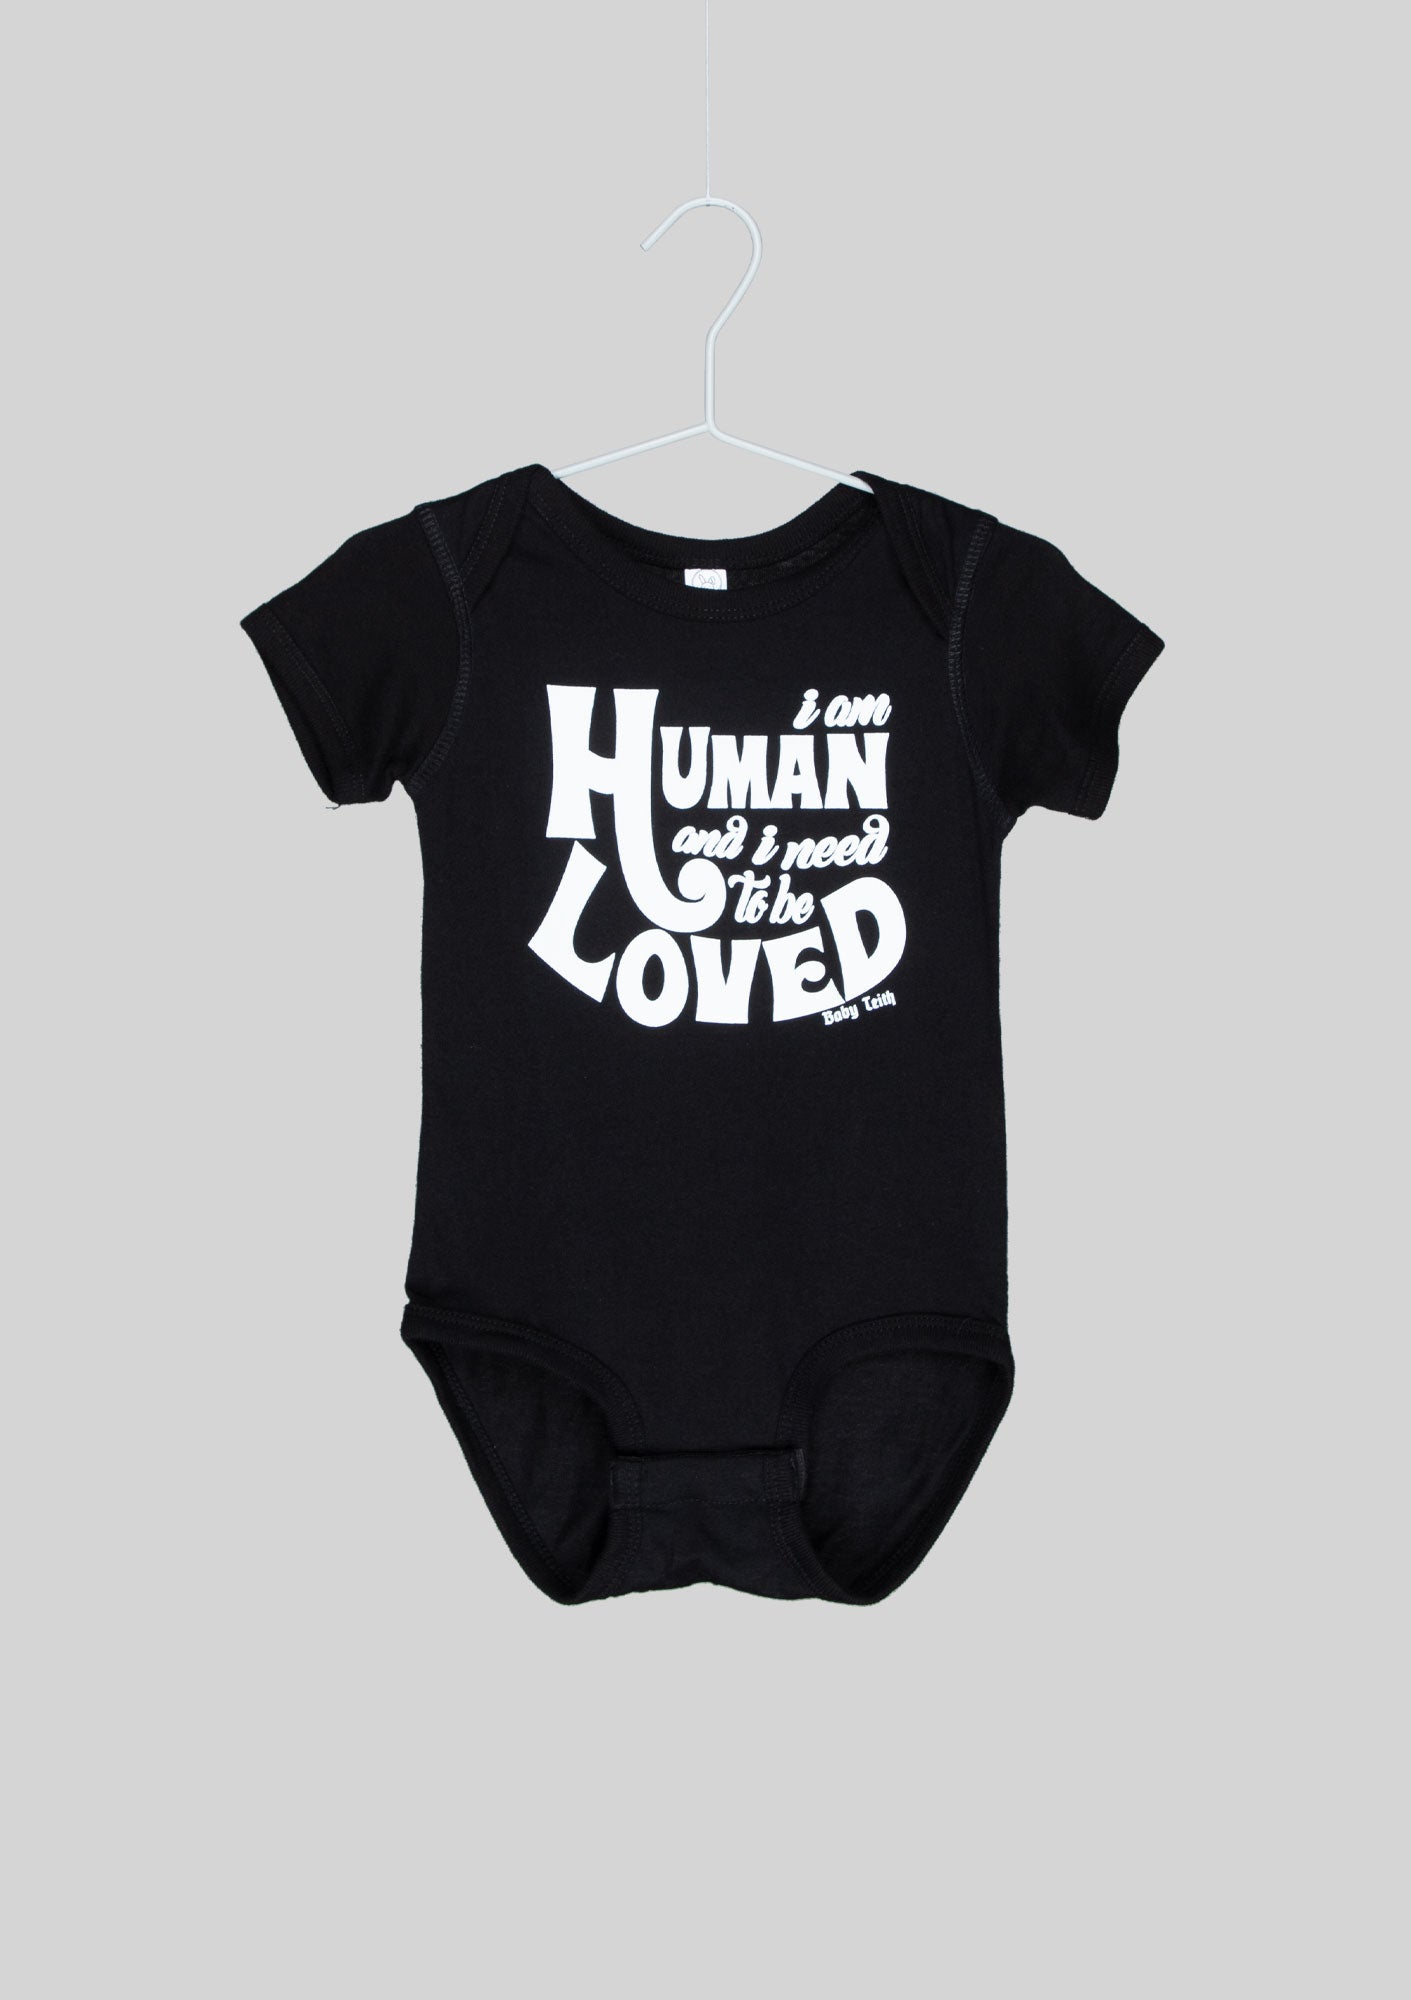 Baby Teith “I am Human” Bodysuit